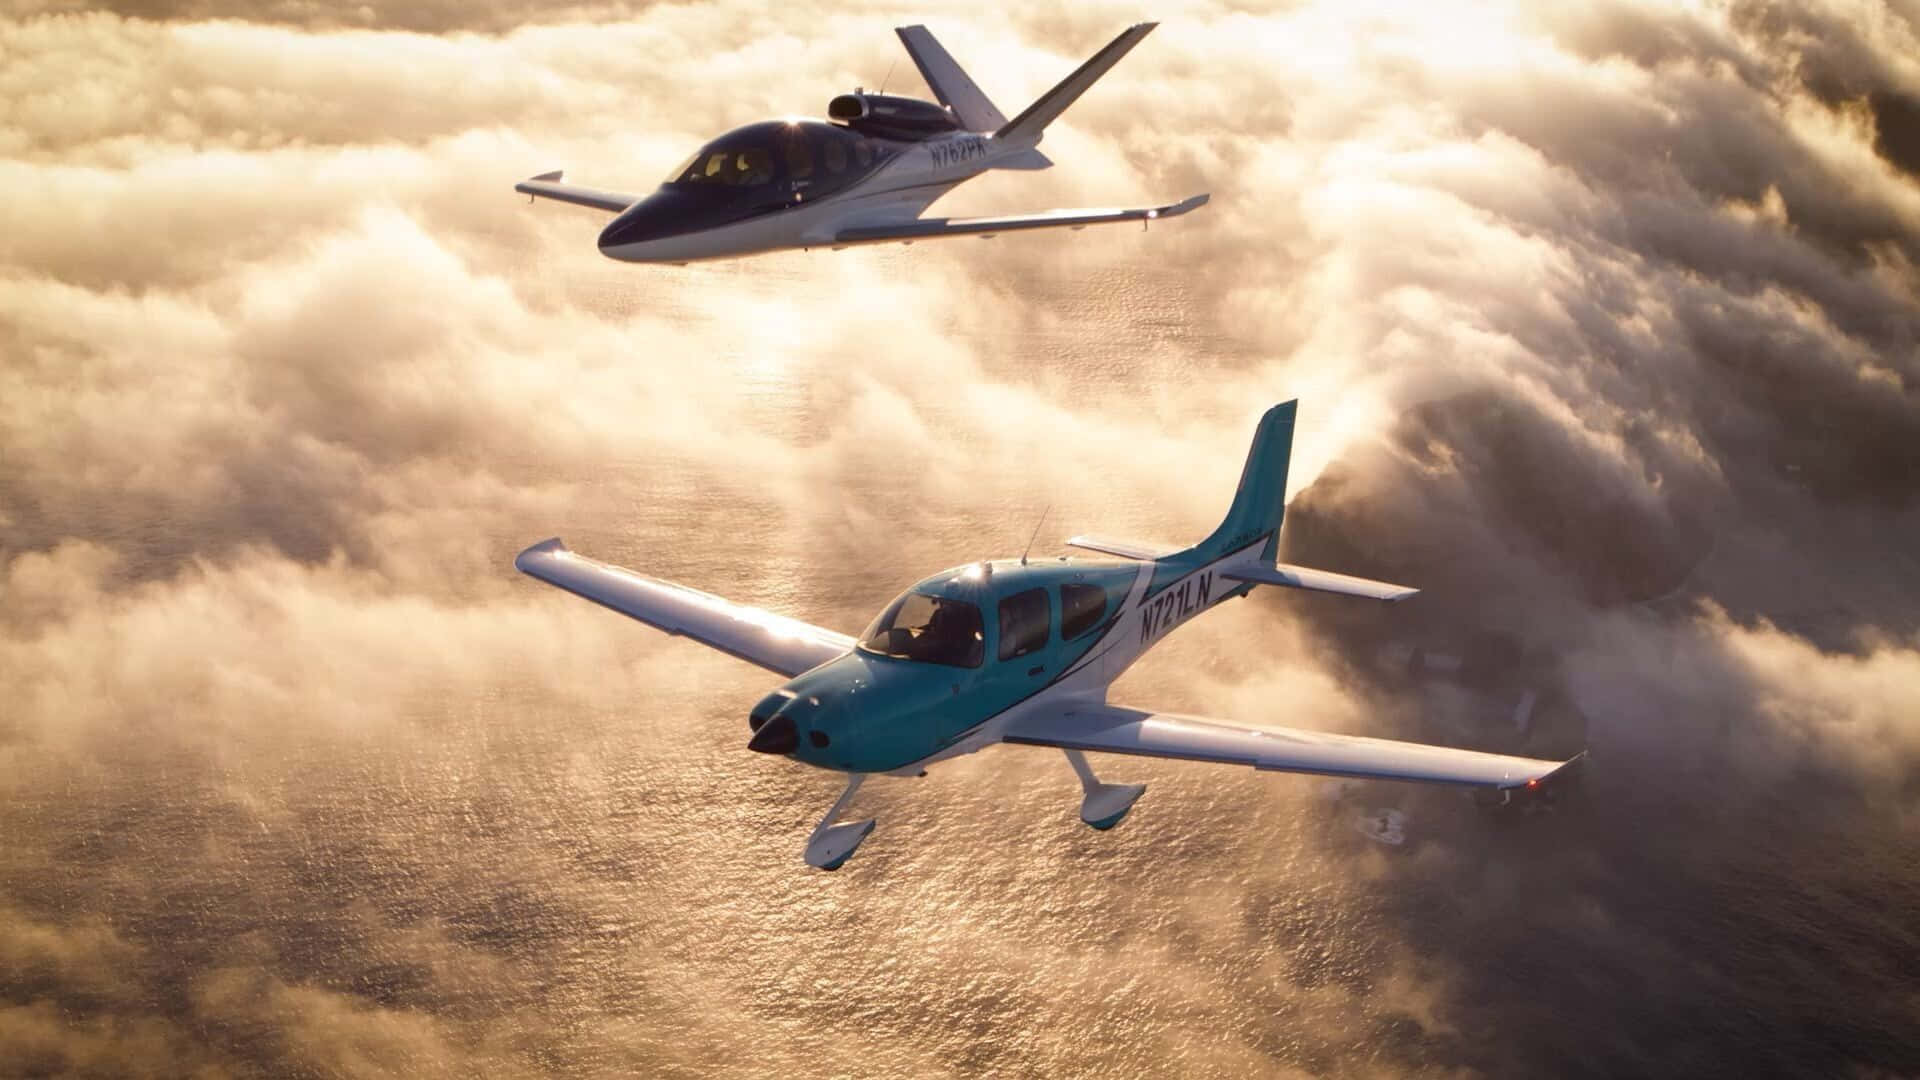 Unavista Aerea Di Un Paesaggio Panoramico Con La Sagoma Di Un Aeroplano Tra Le Nuvole.